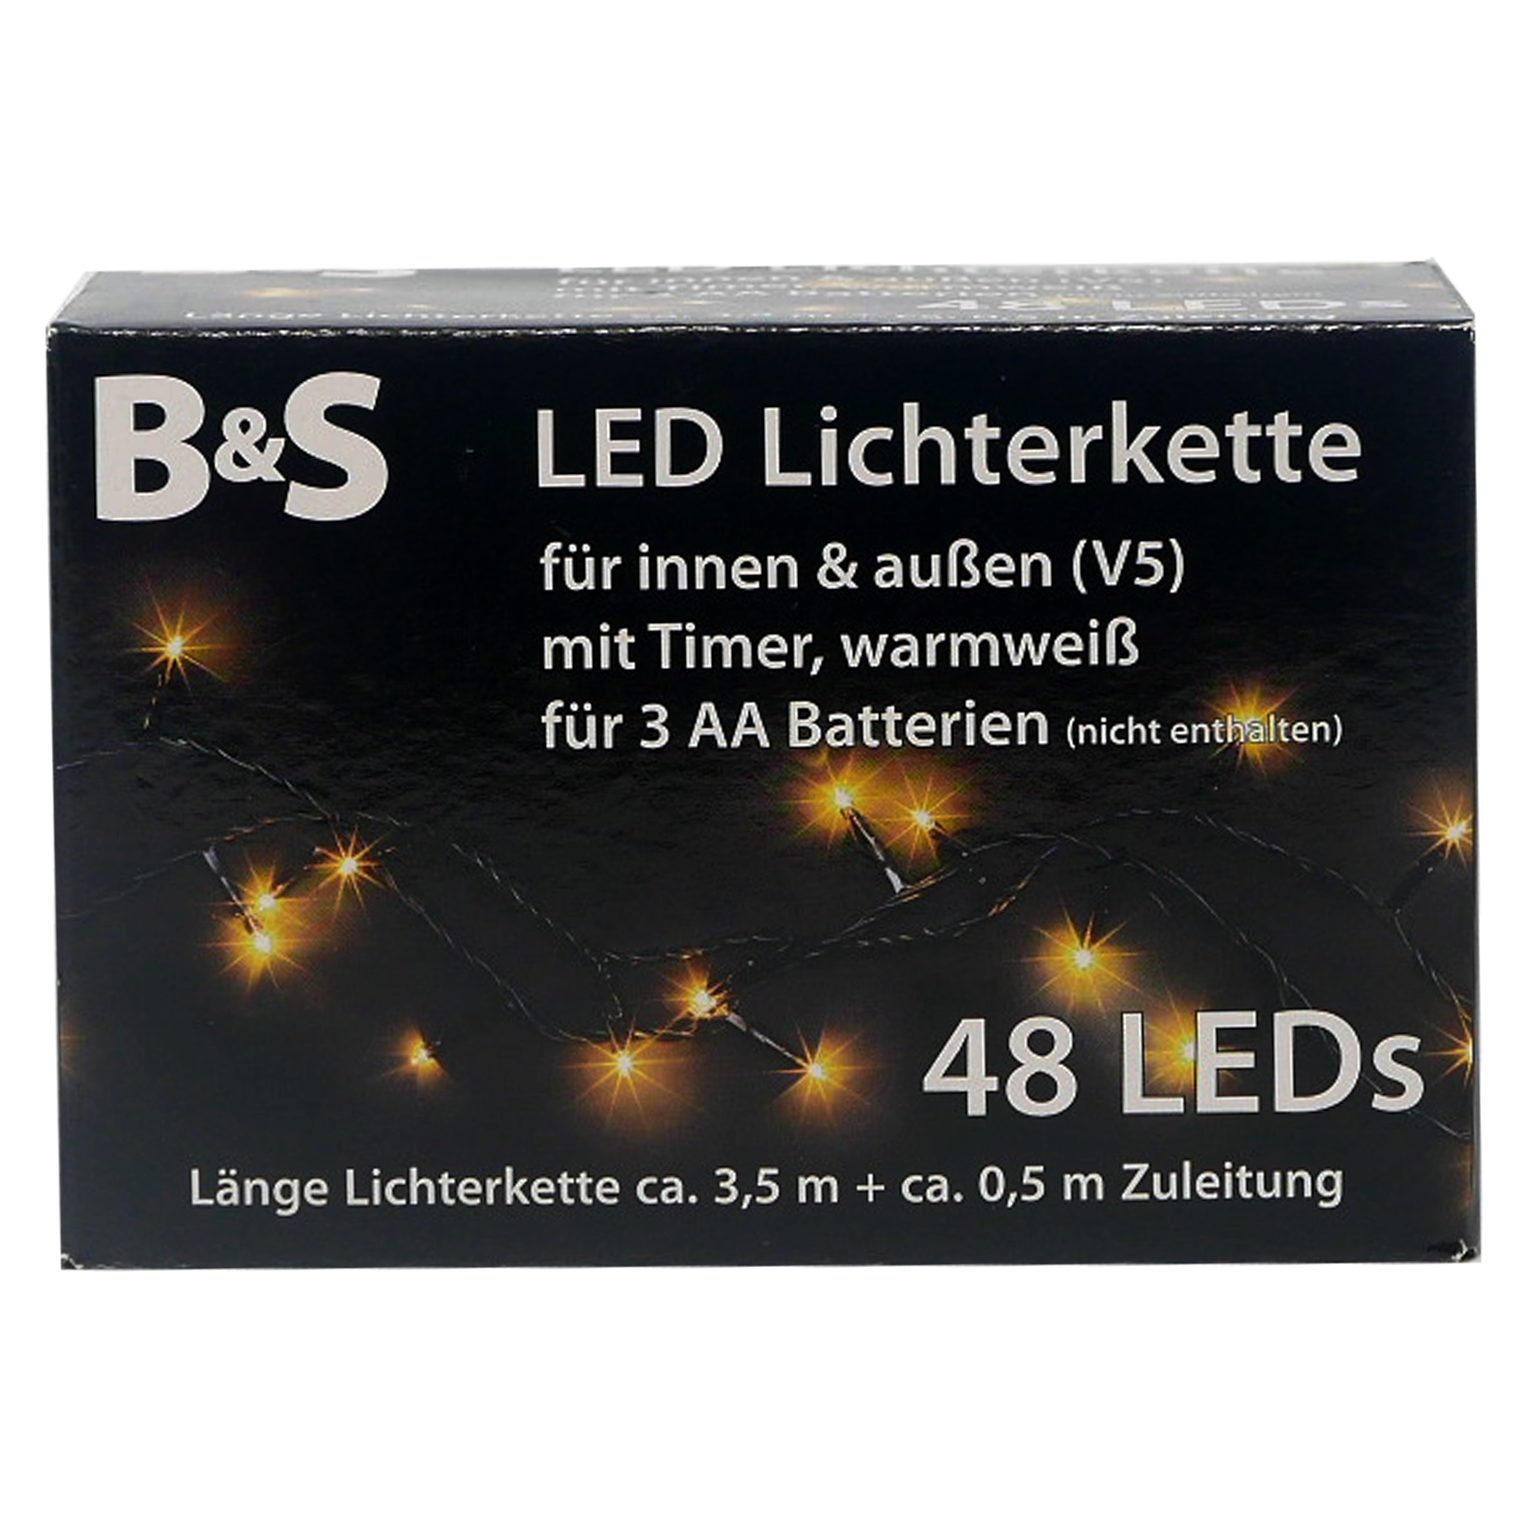 B&S LED-Lichterkette LED Batterie LEDs Innenbereich 48 mit Lichterkette warmweiß